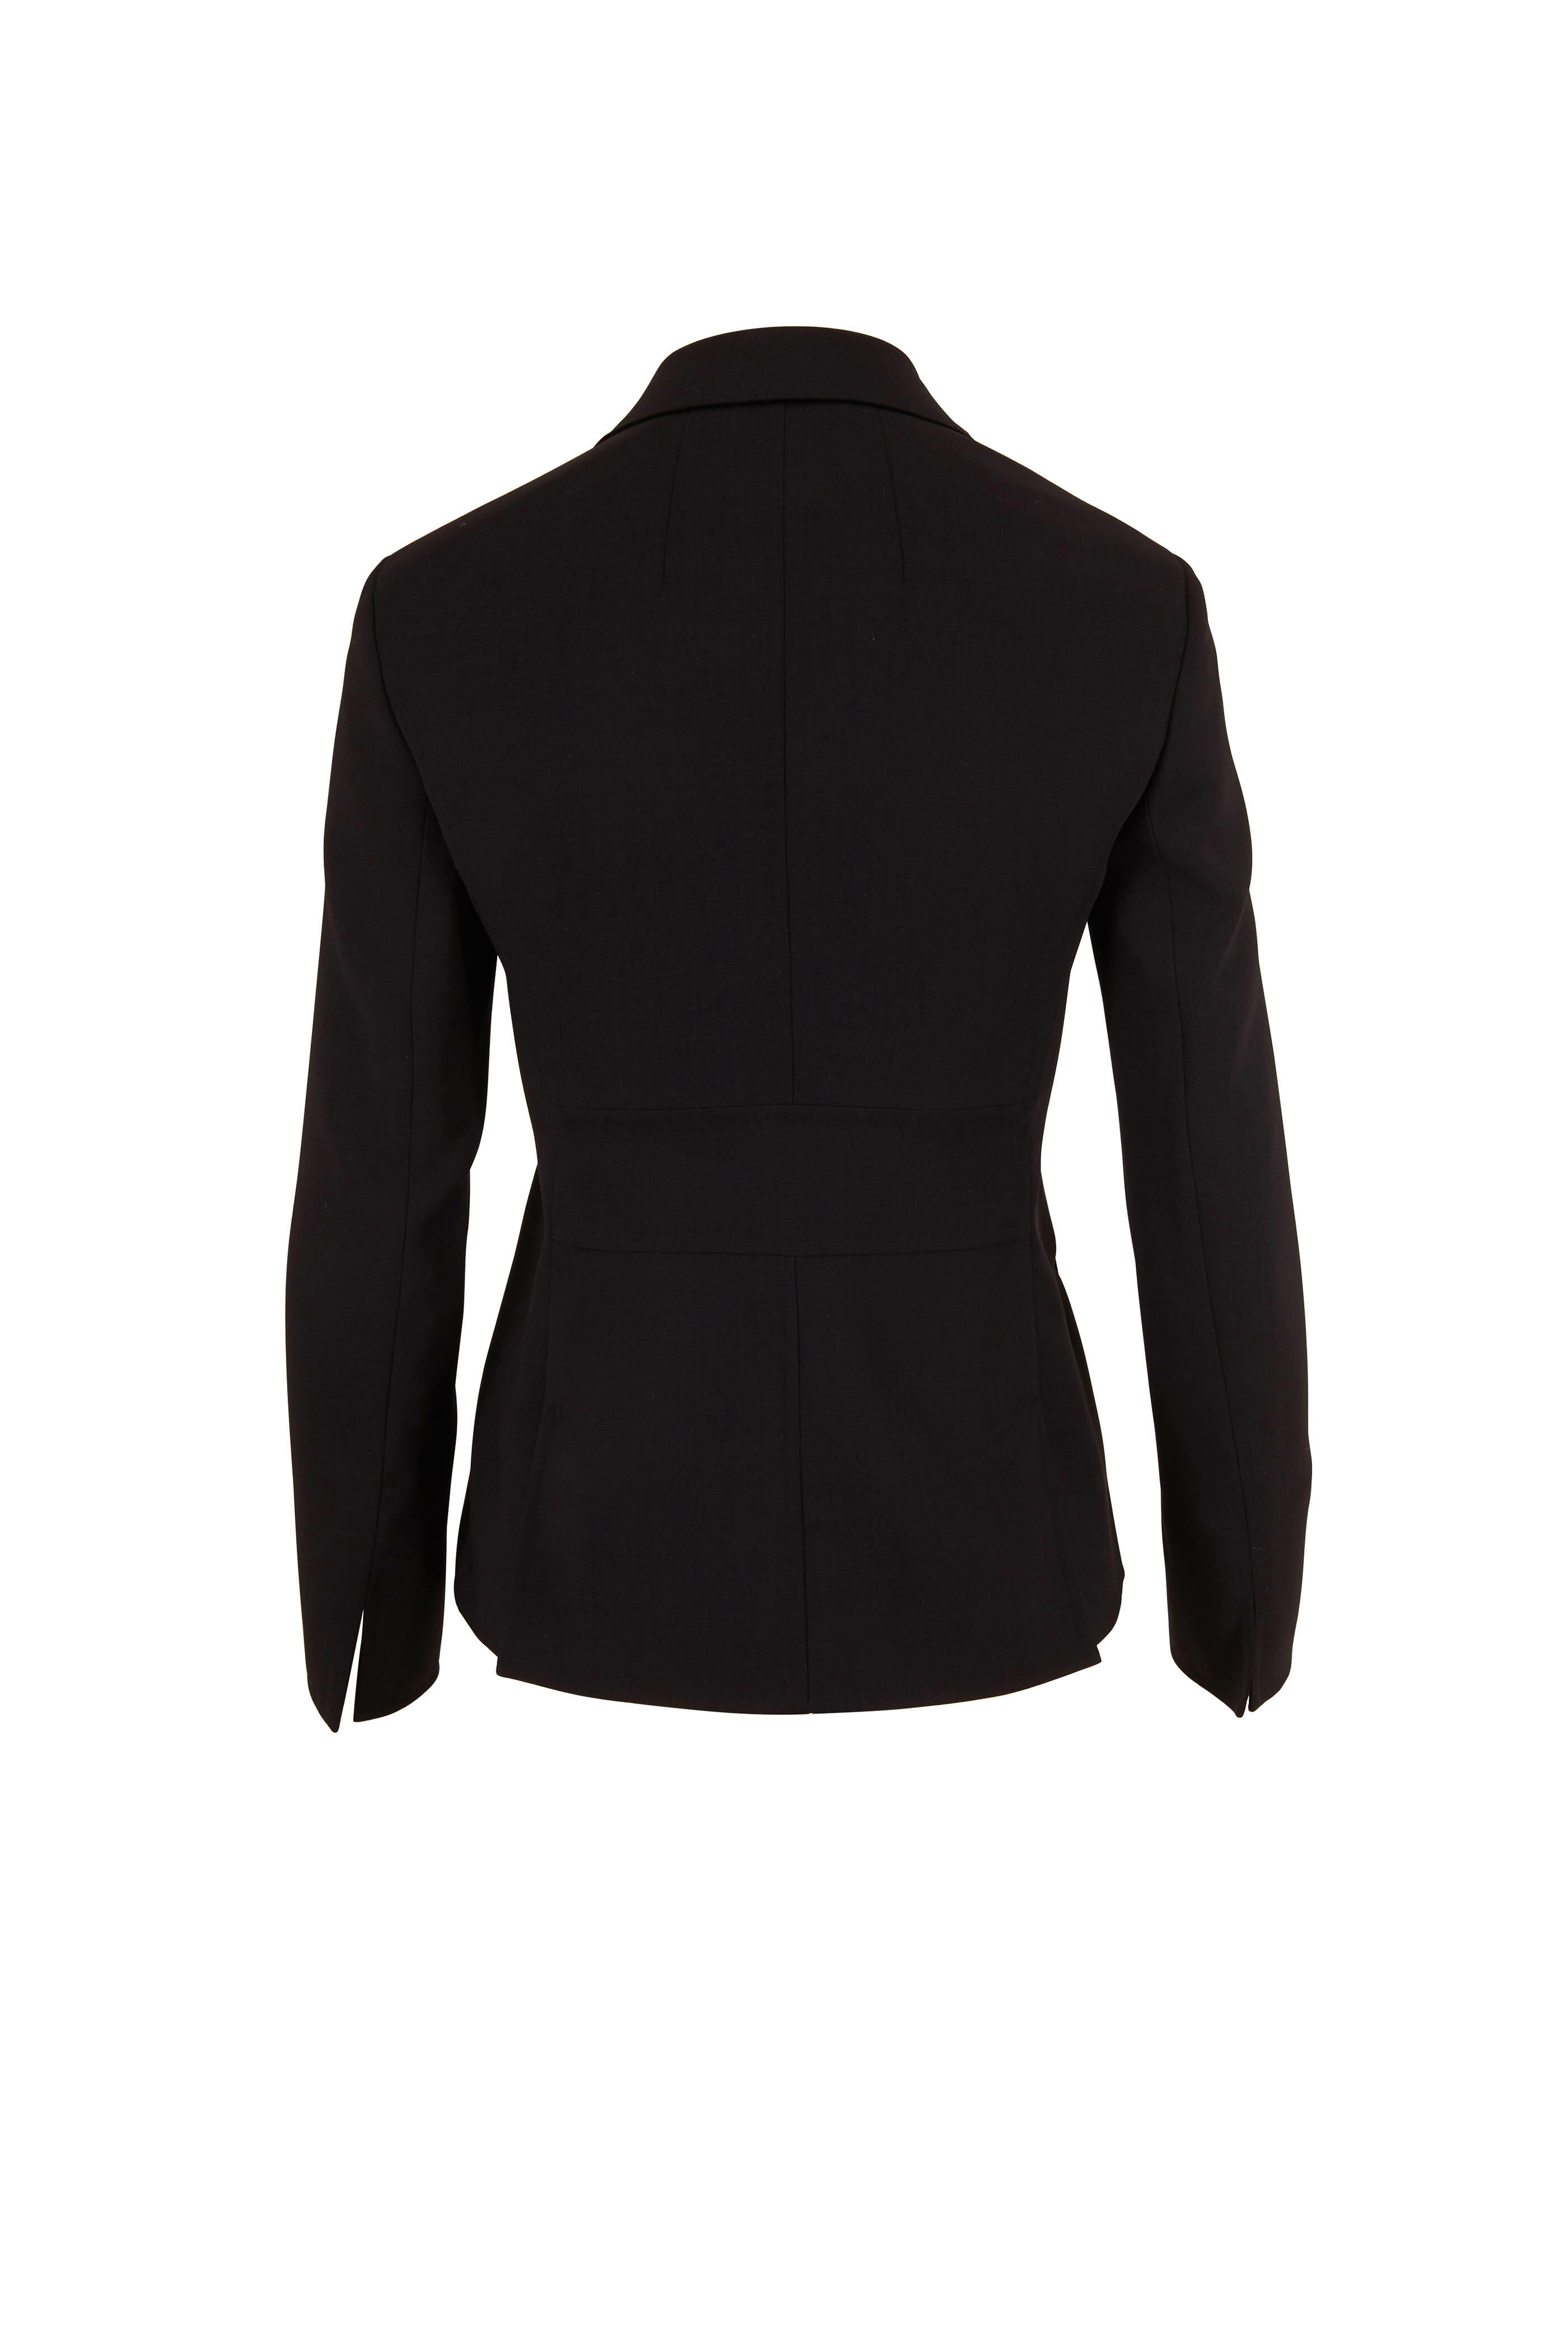 Akris - Savino Black Double-Faced Wool Jacket | Mitchell Stores